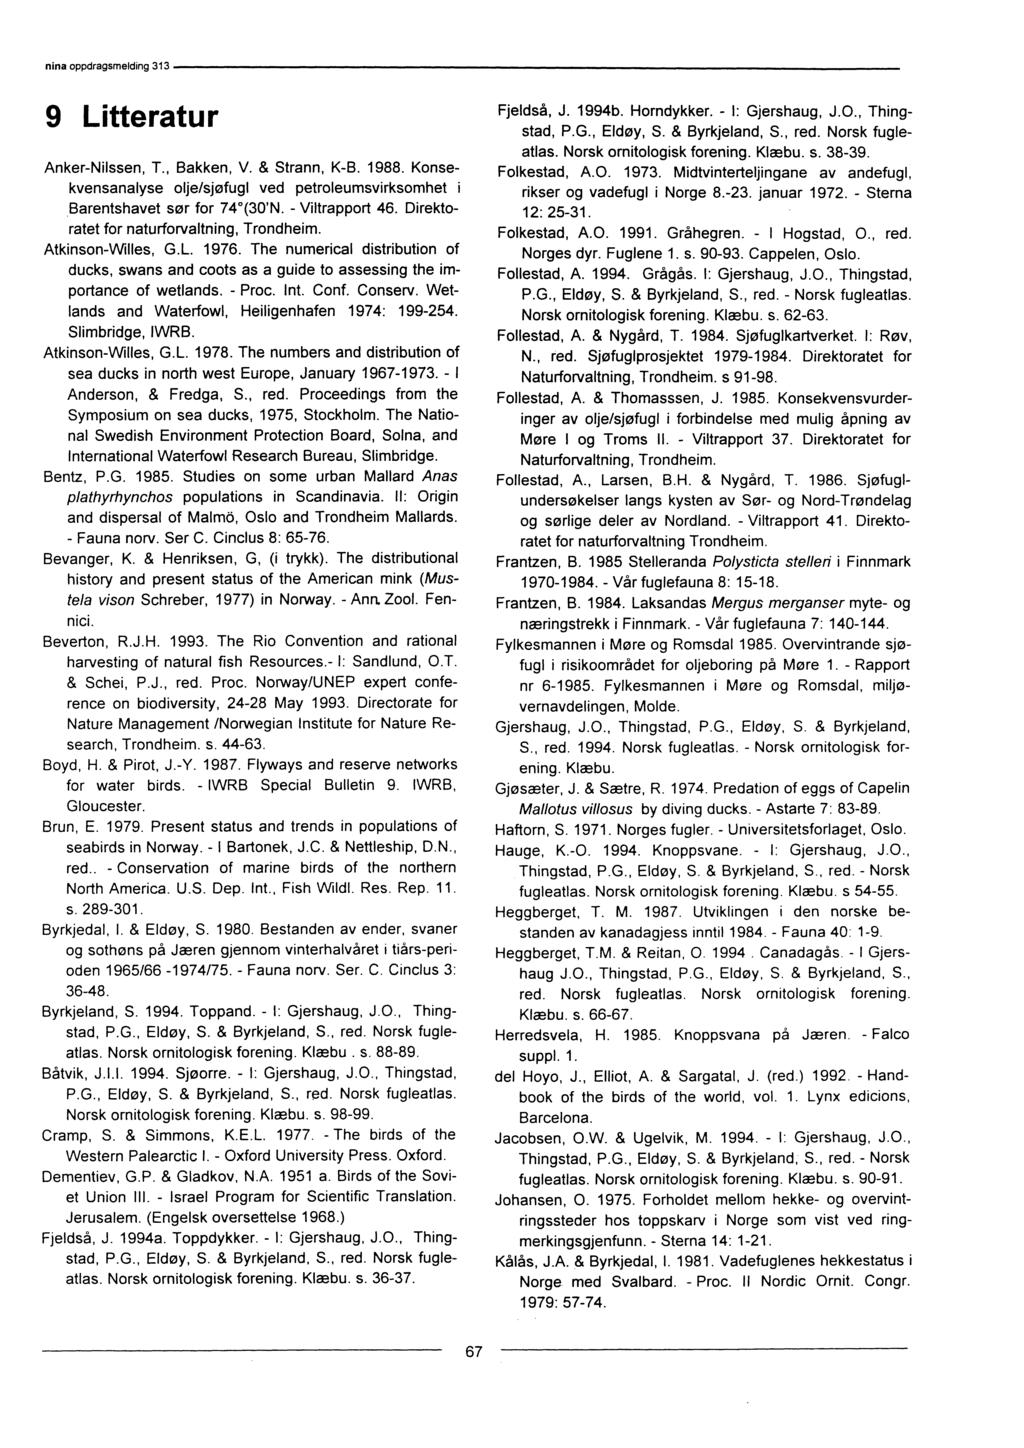 9 Litteratur Anker-Nilssen, T., Bakken, V. & Strann, K-B. 1988. Konsekvensanalyse olje/sjøfugl ved petroleumsvirksomhet i Barentshavet sør for 74*(30'N. - Viltrapport 46.